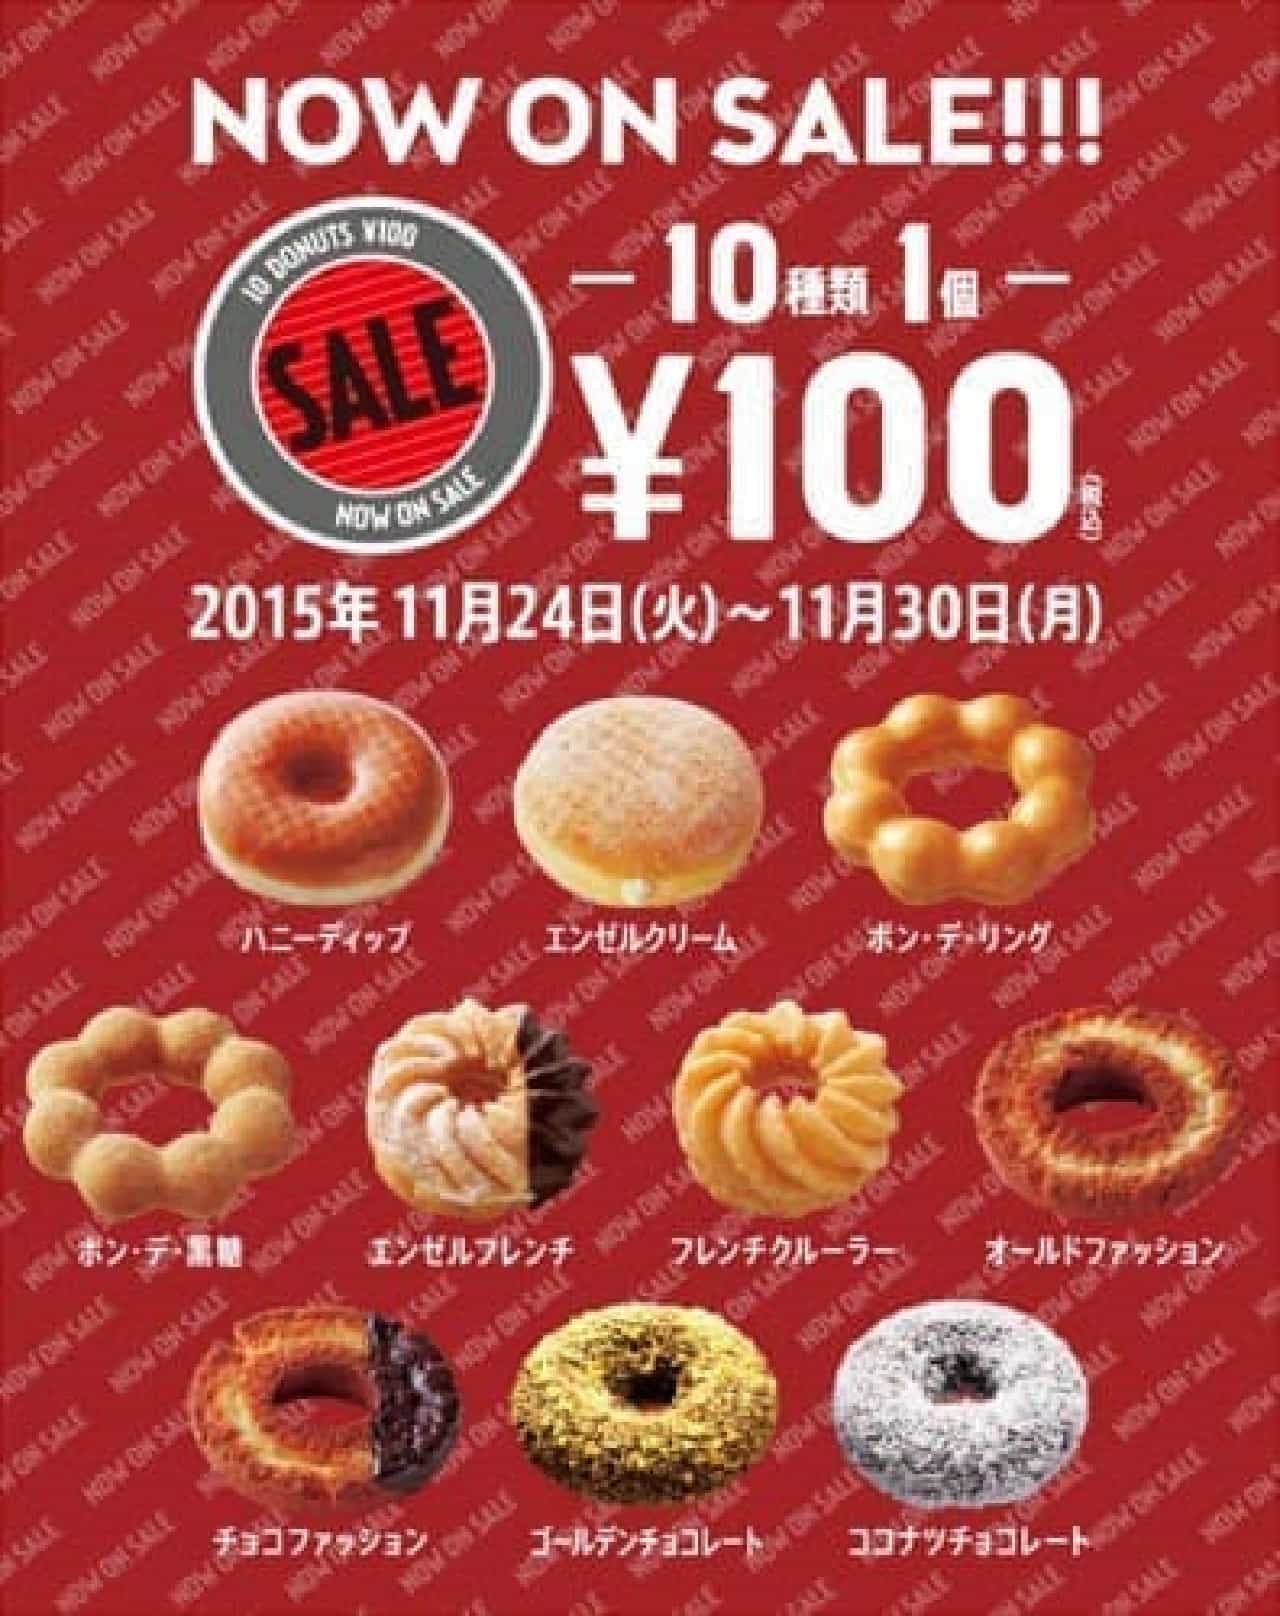 100 yen sale at Mister Donut! (Image source: Mister Donut official website)